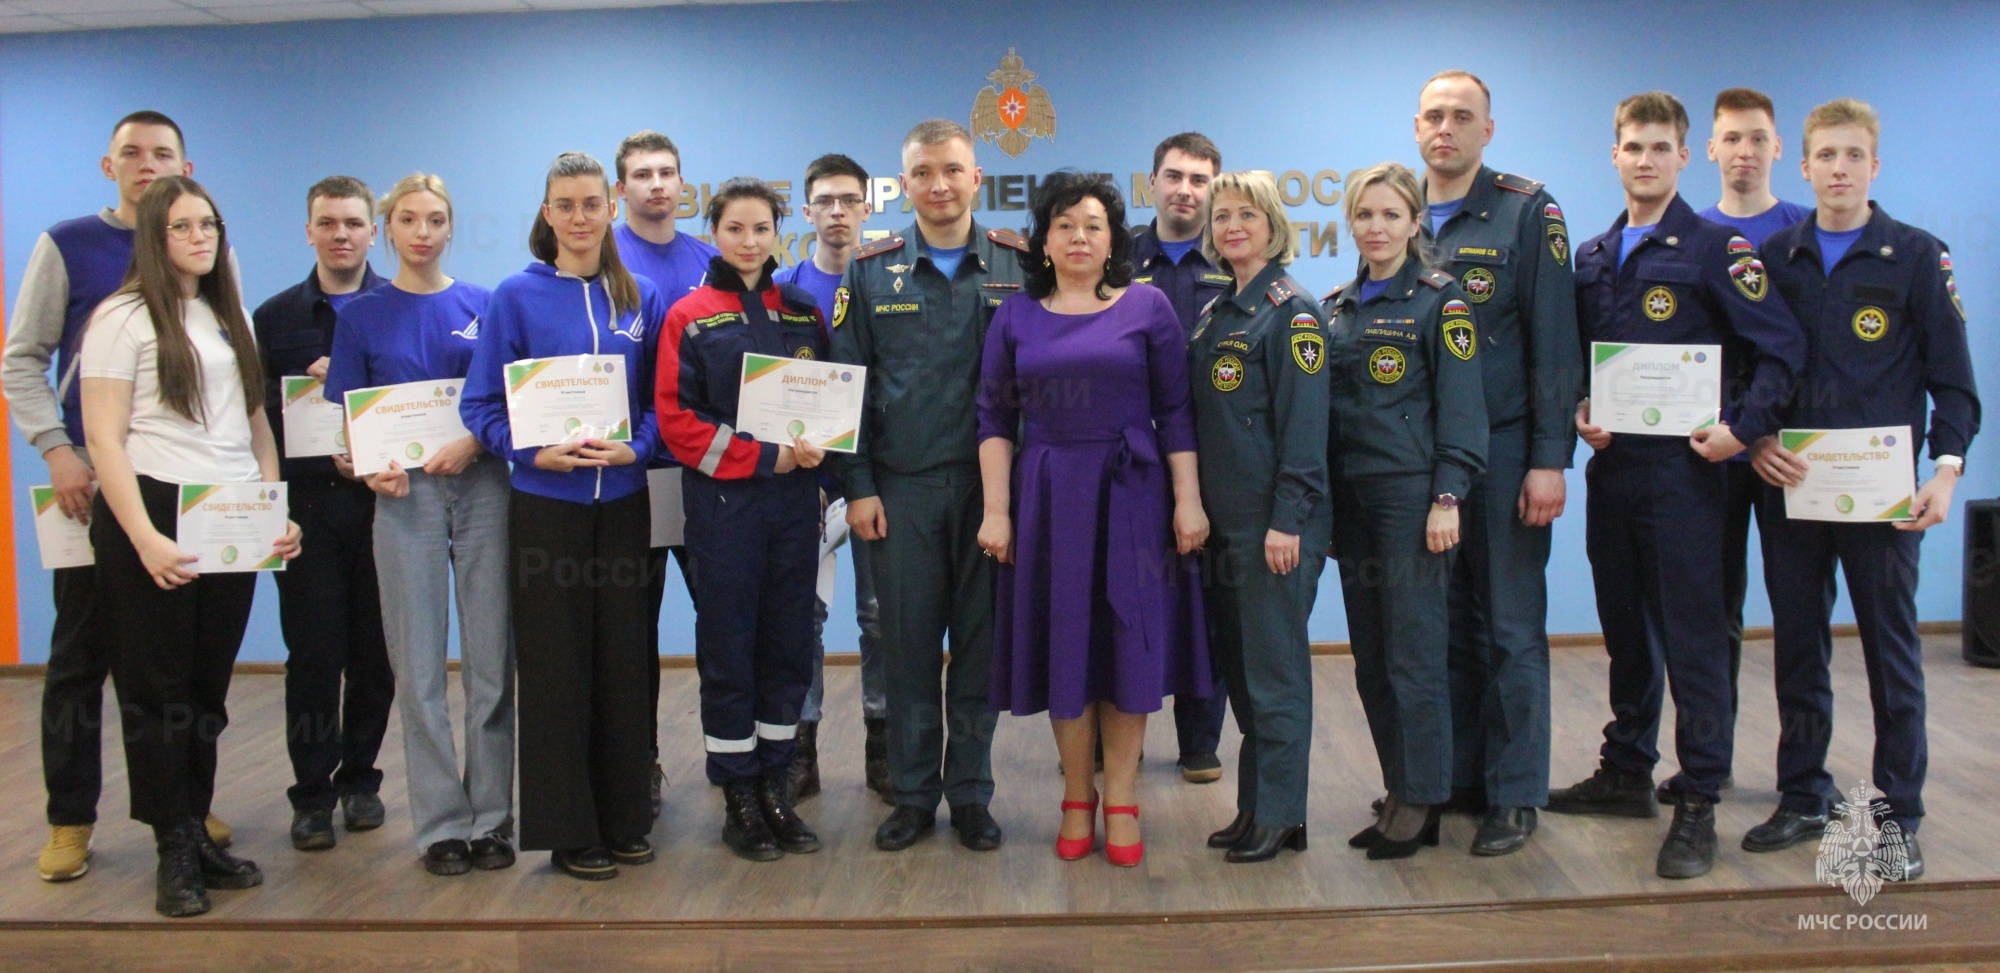 Студенты из Костромы проявили завидные успехи в оказании помощи людям в чрезвычайных ситуациях